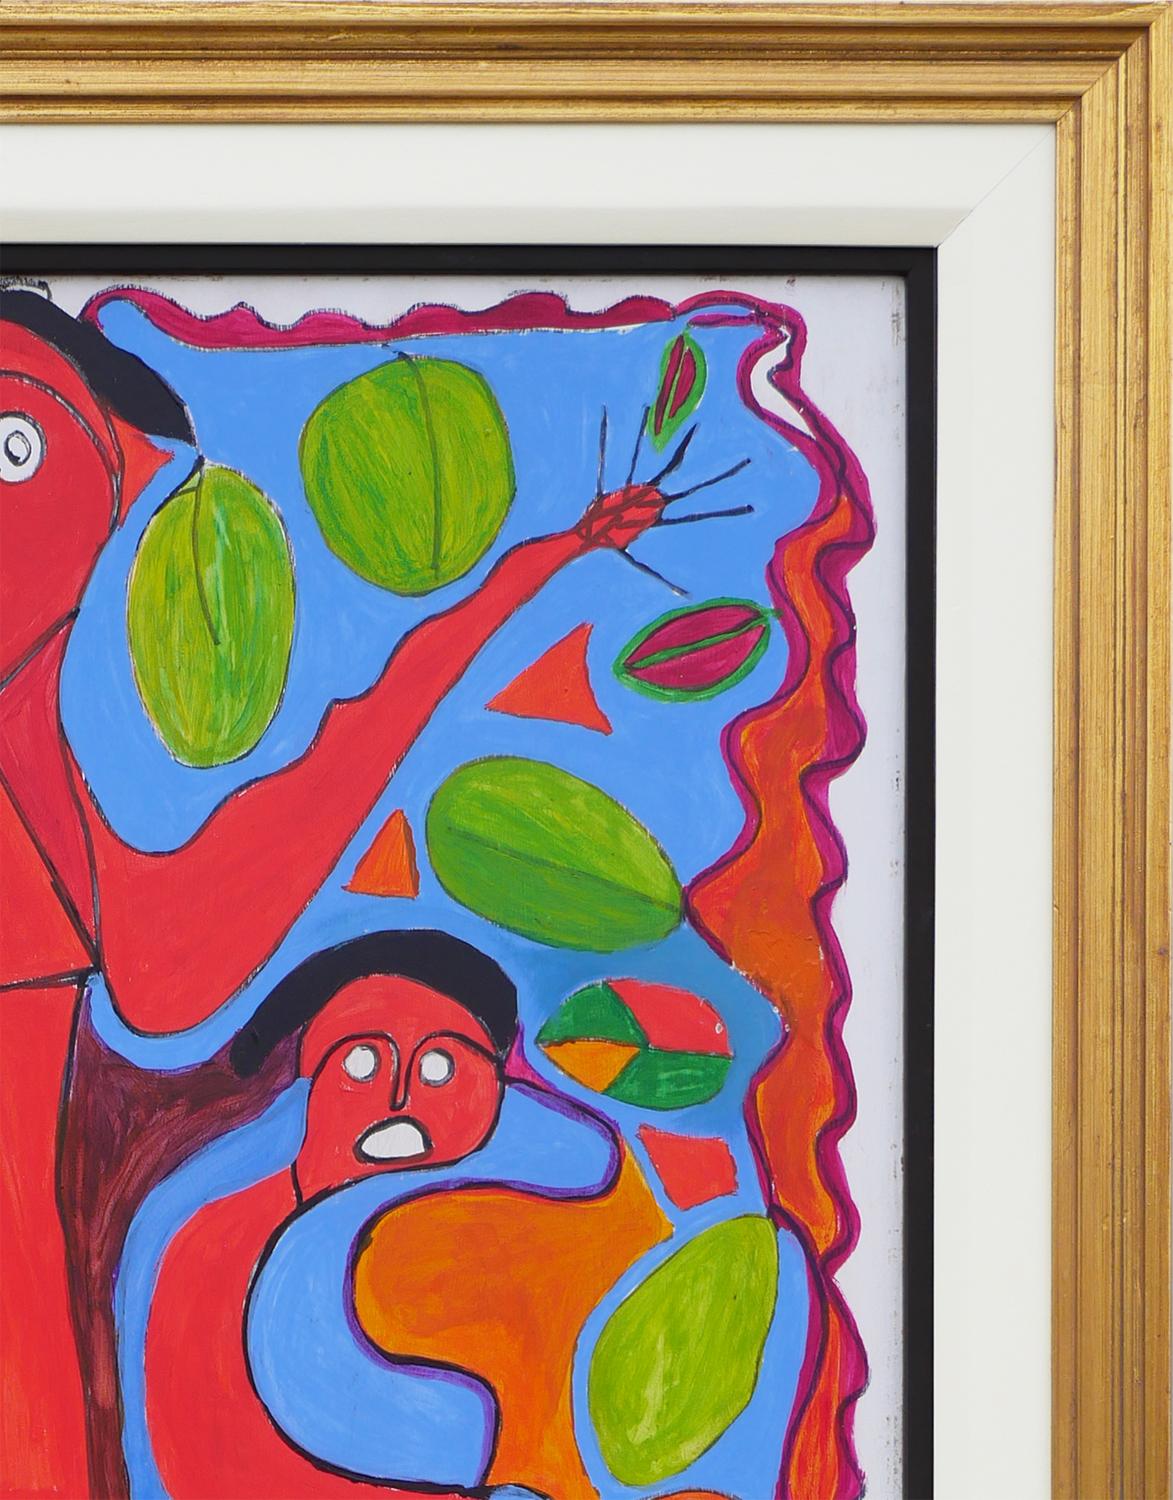 Peinture figurative abstraite rouge et bleue de l'artiste haïtien Richard Antilhomme. La peinture représente quatre figures rouges différentes qui se ramifient les unes les autres. Les personnages sont sur un fond bleu clair avec des éléments